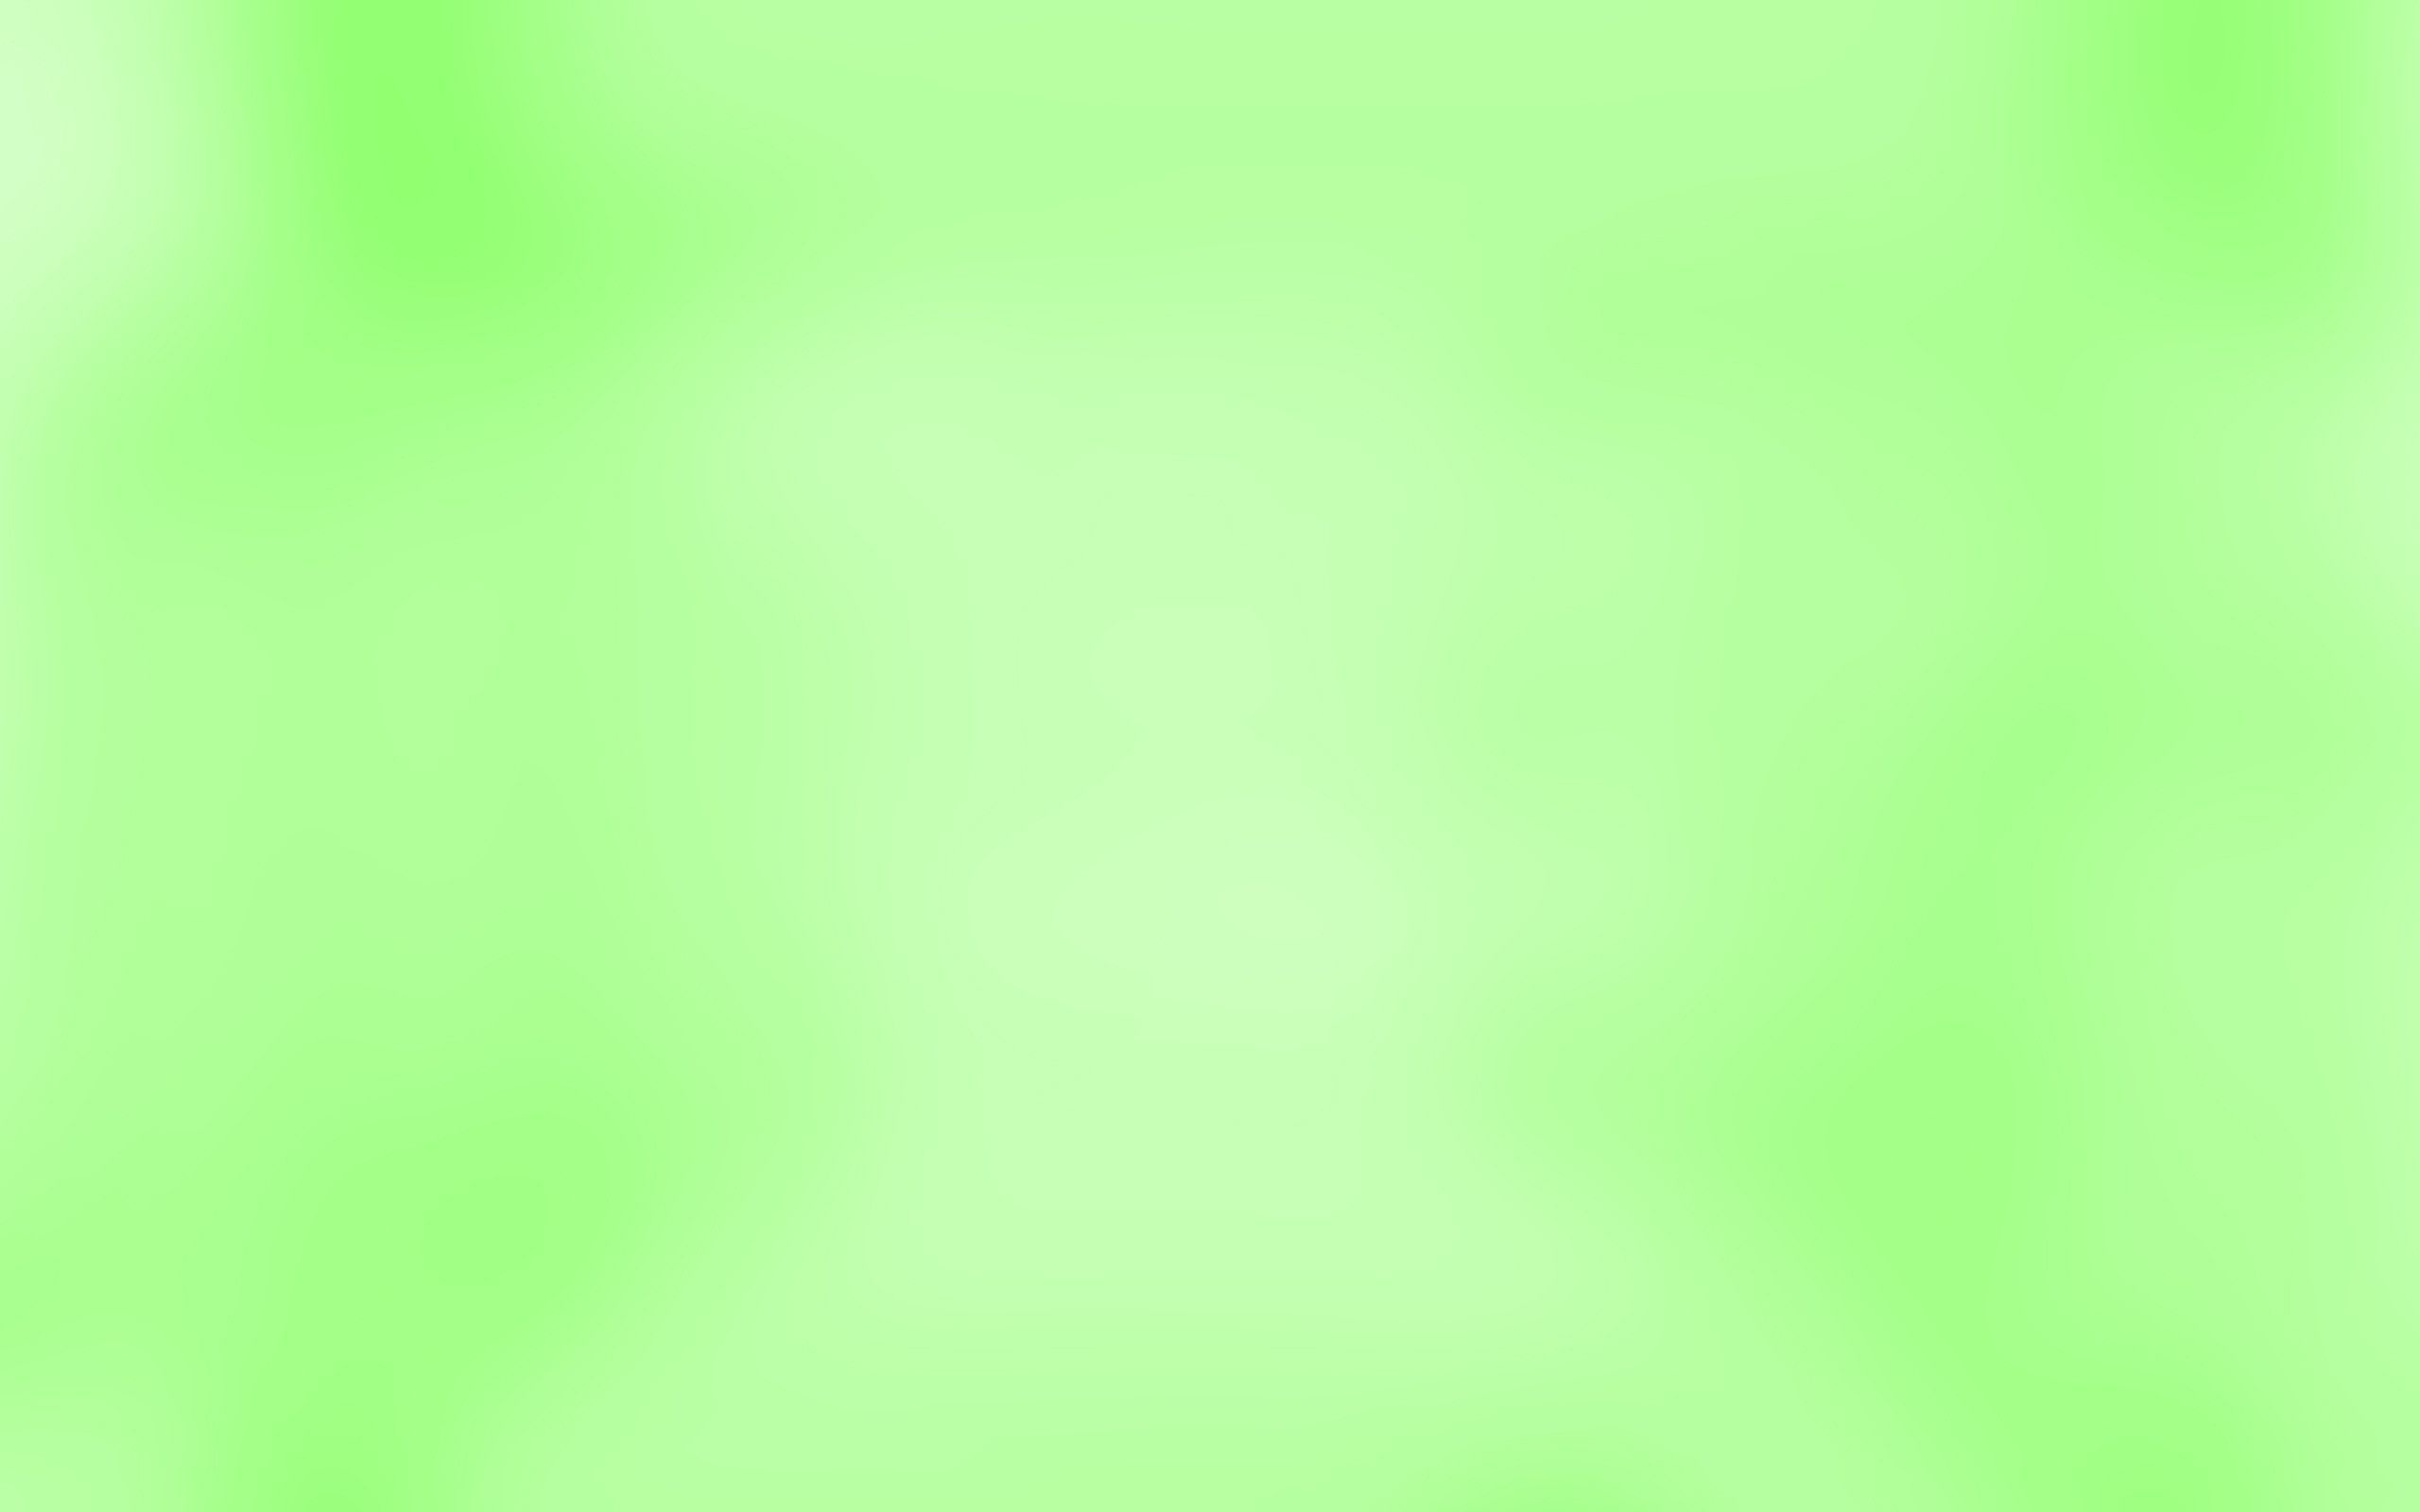 Fondos de pantalla verde claro pastel - FondosMil